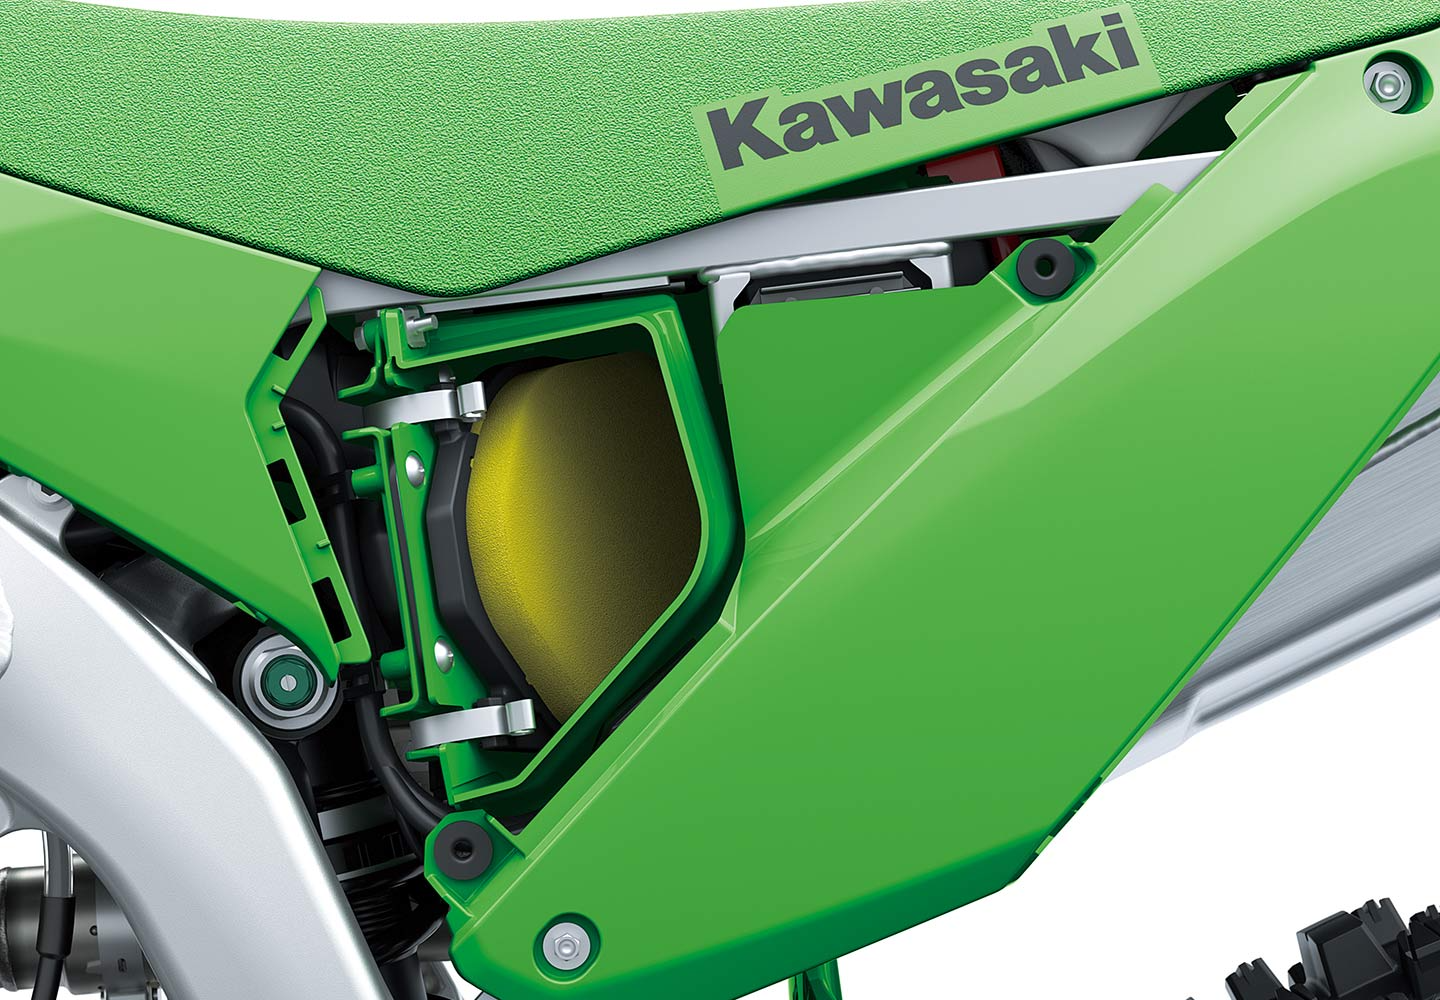 Kawasaki KX450 | 競技用車両|もっともパワフルなモトクロッサー